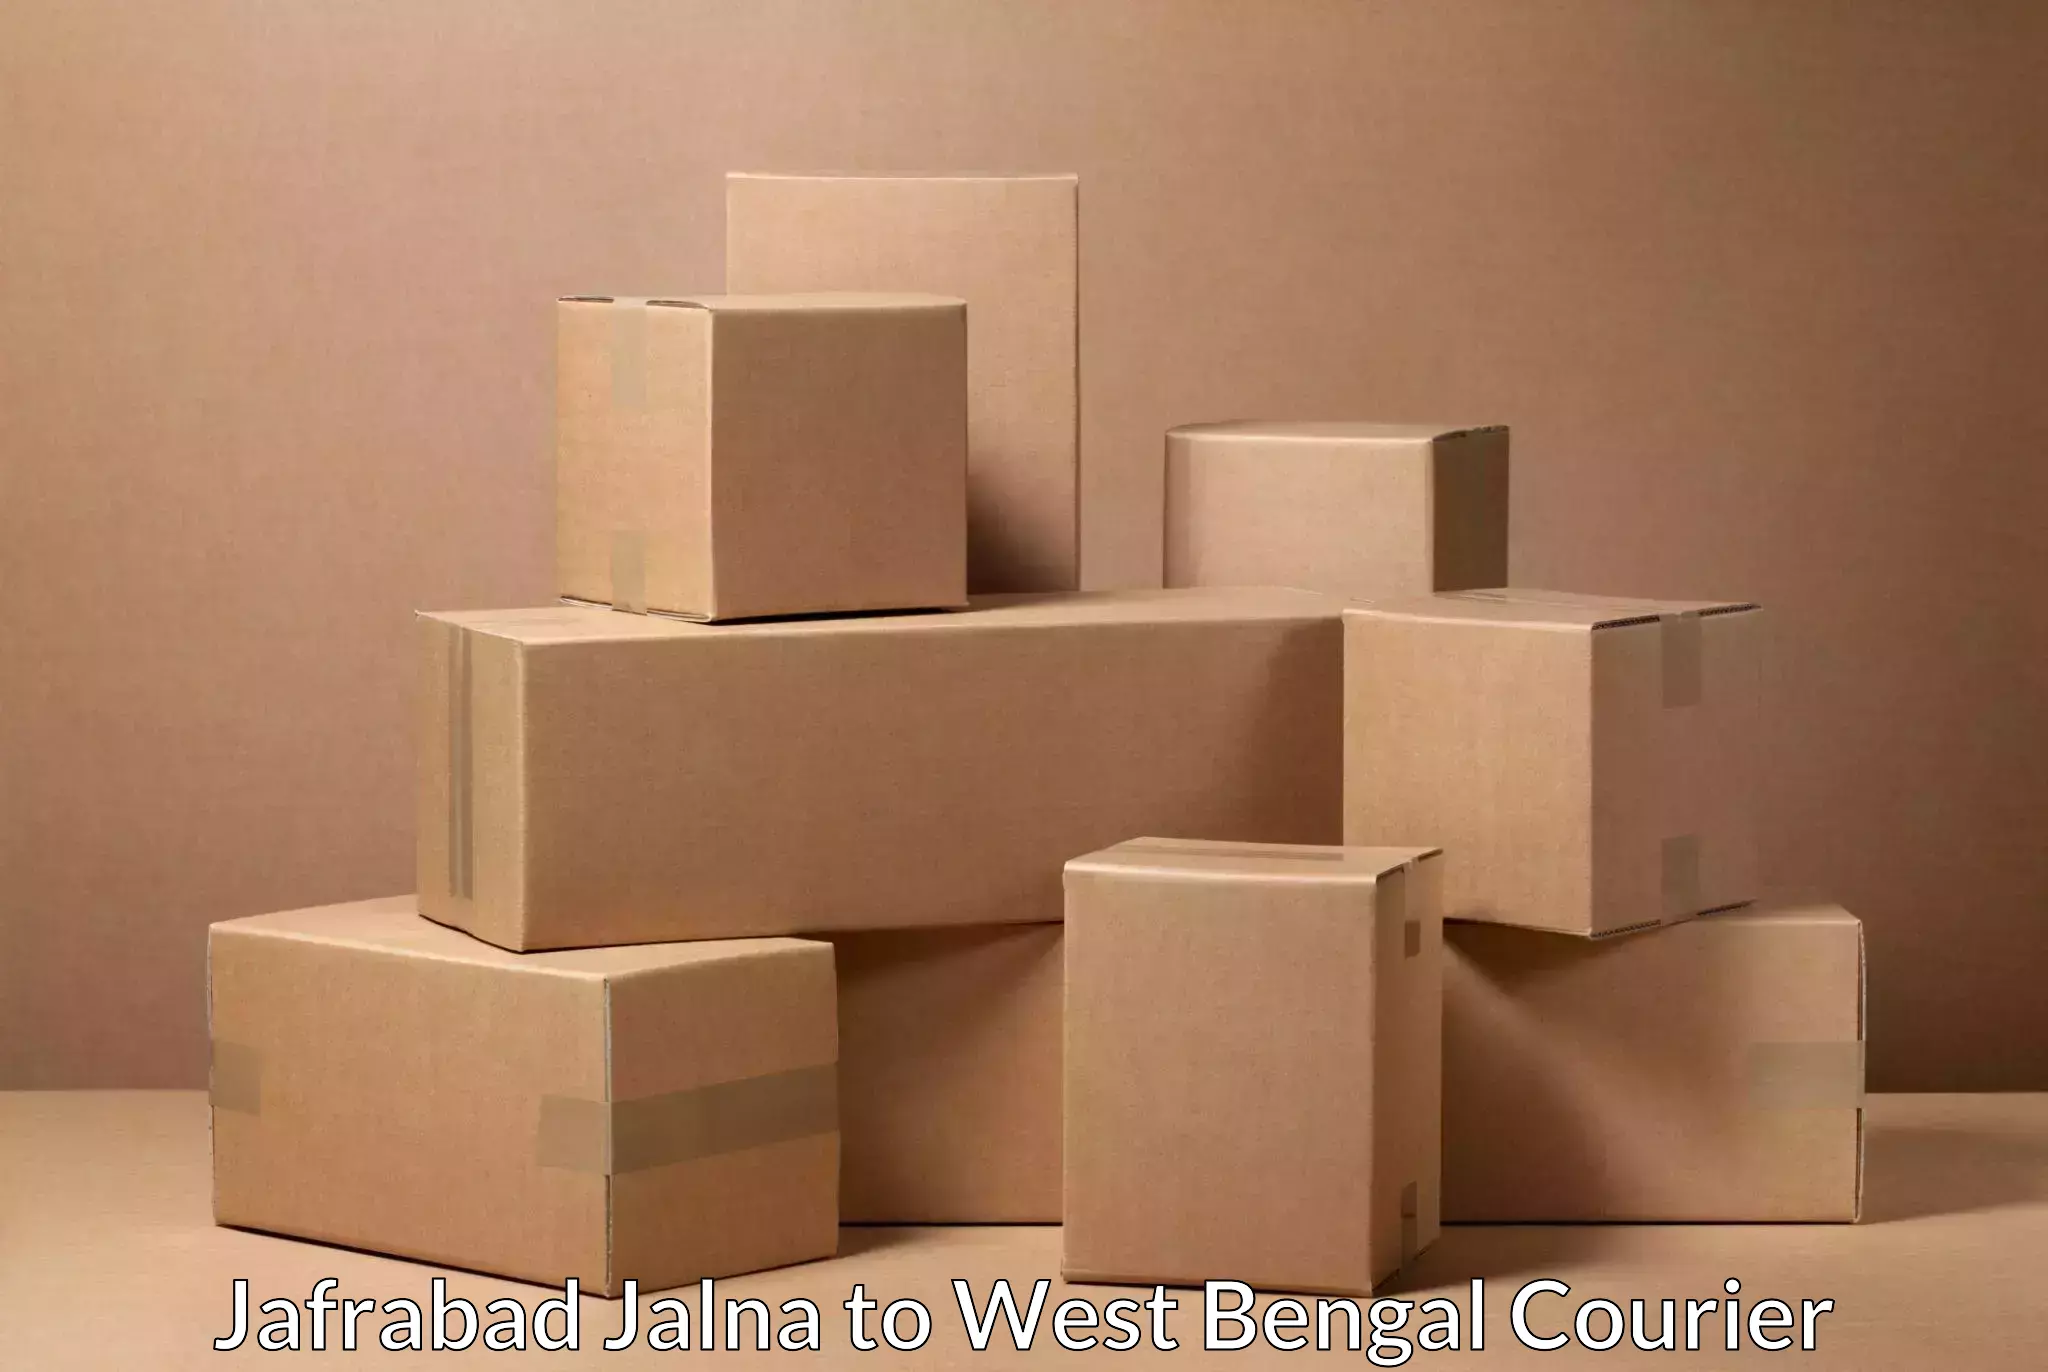 Professional courier handling Jafrabad Jalna to Durgapur